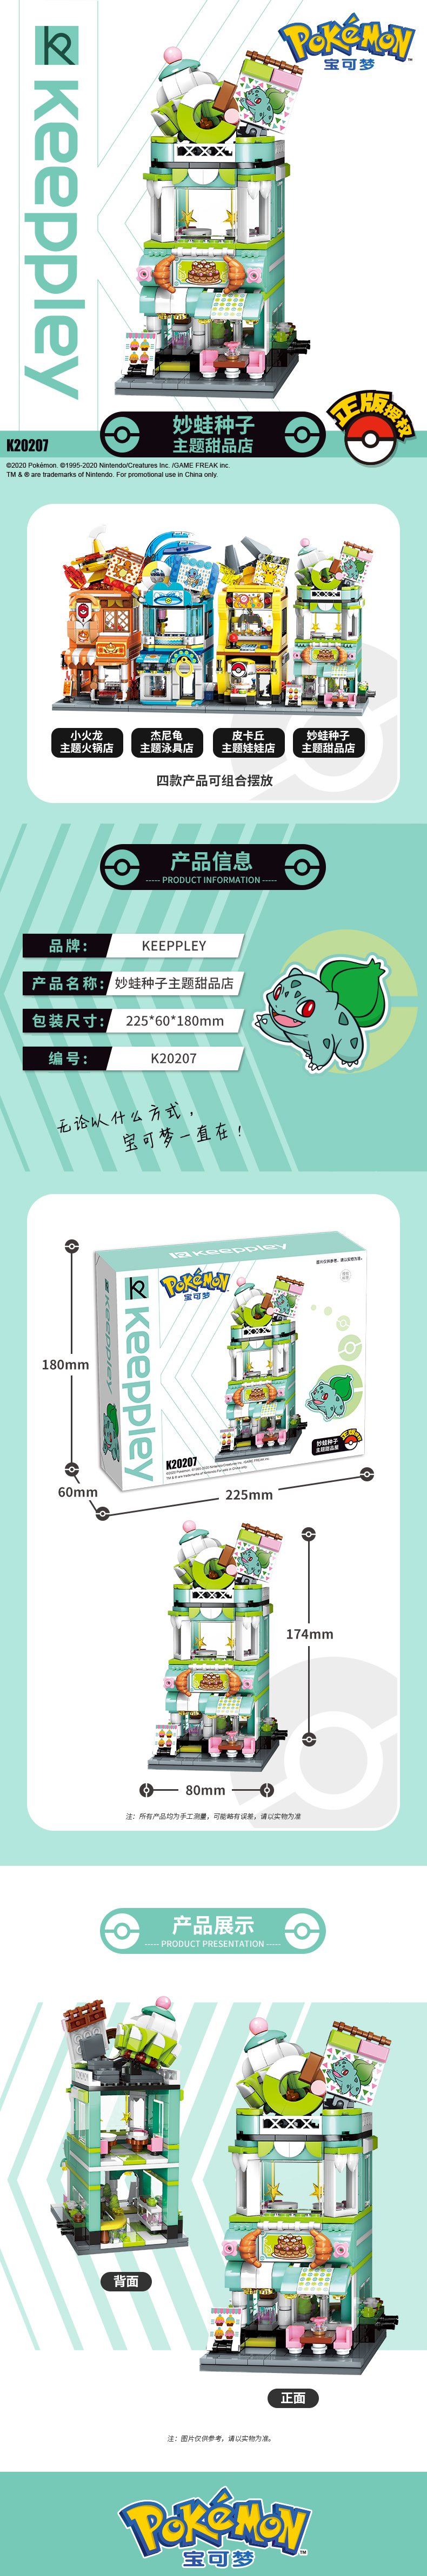 Keeppley K20207 Wonder Frog Seed Building Blocks Toy Set